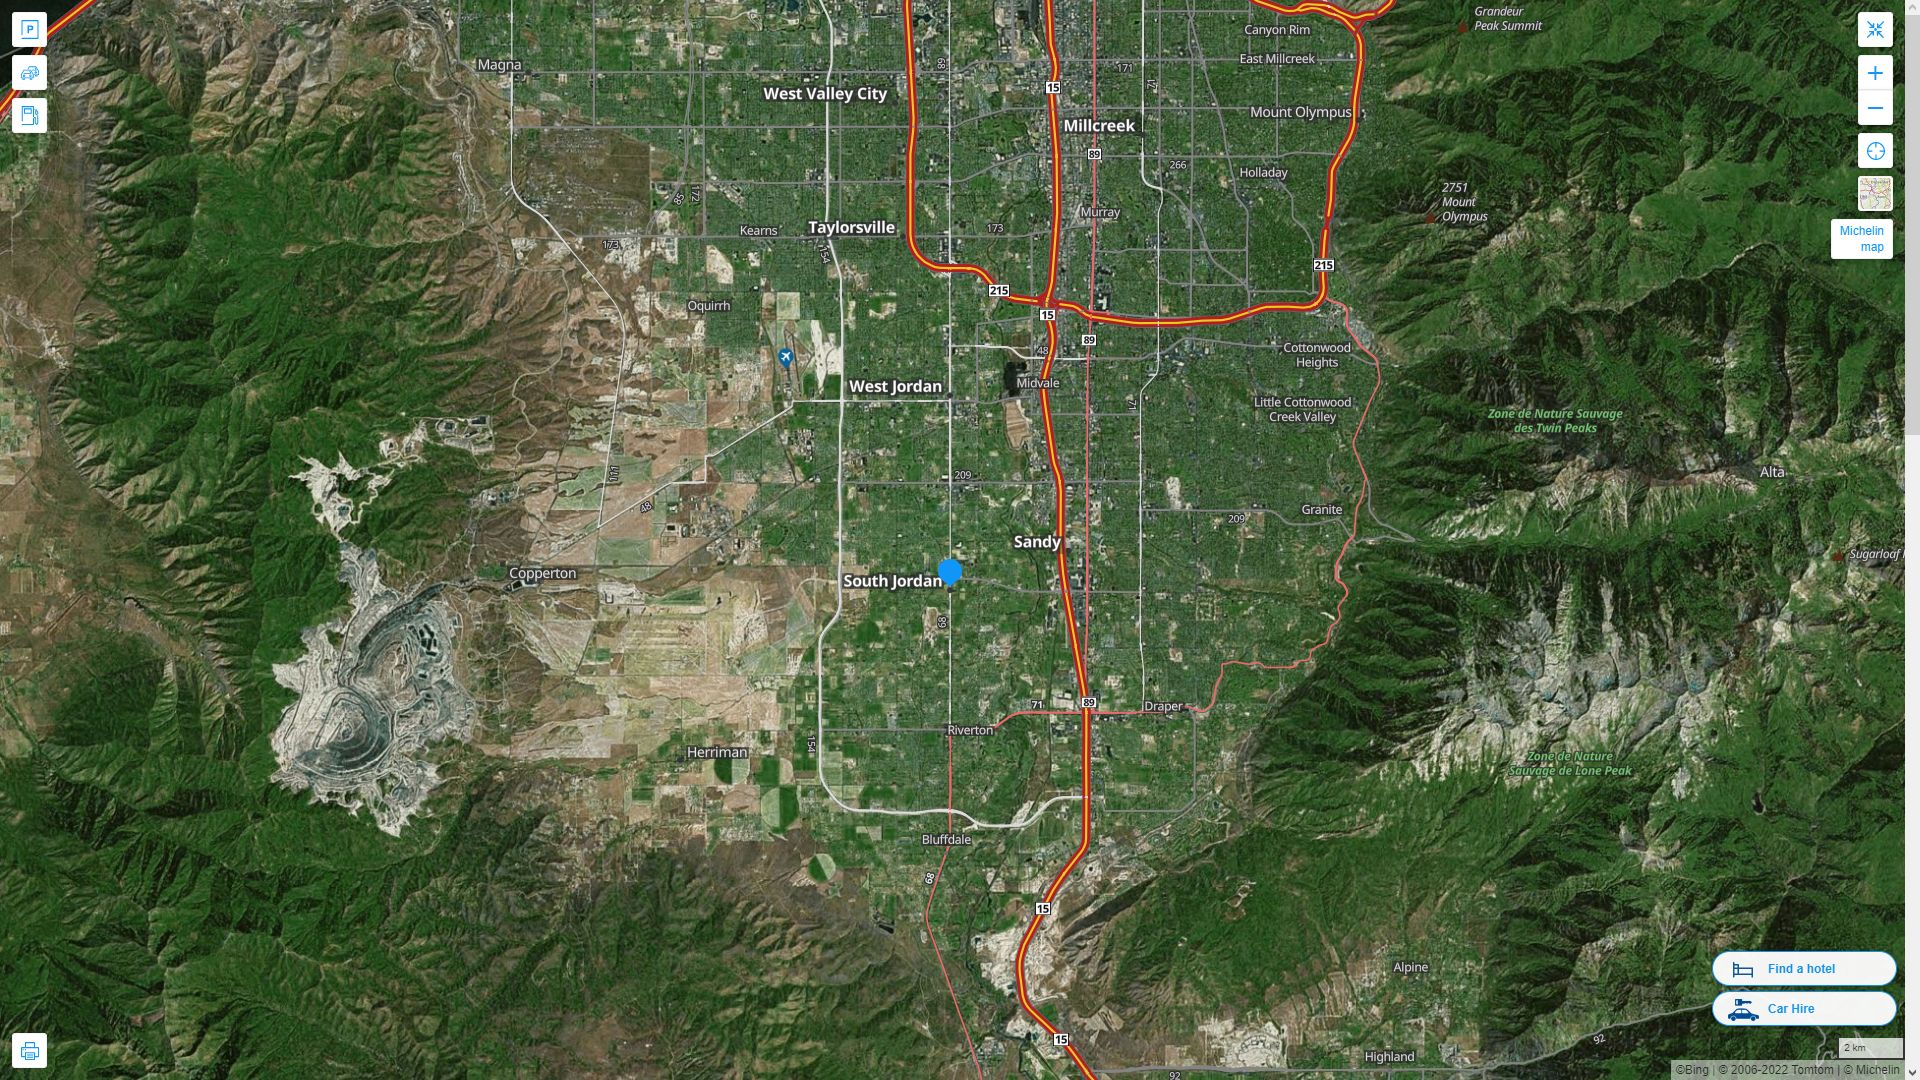 South Jordan Utah Highway and Road Map with Satellite View